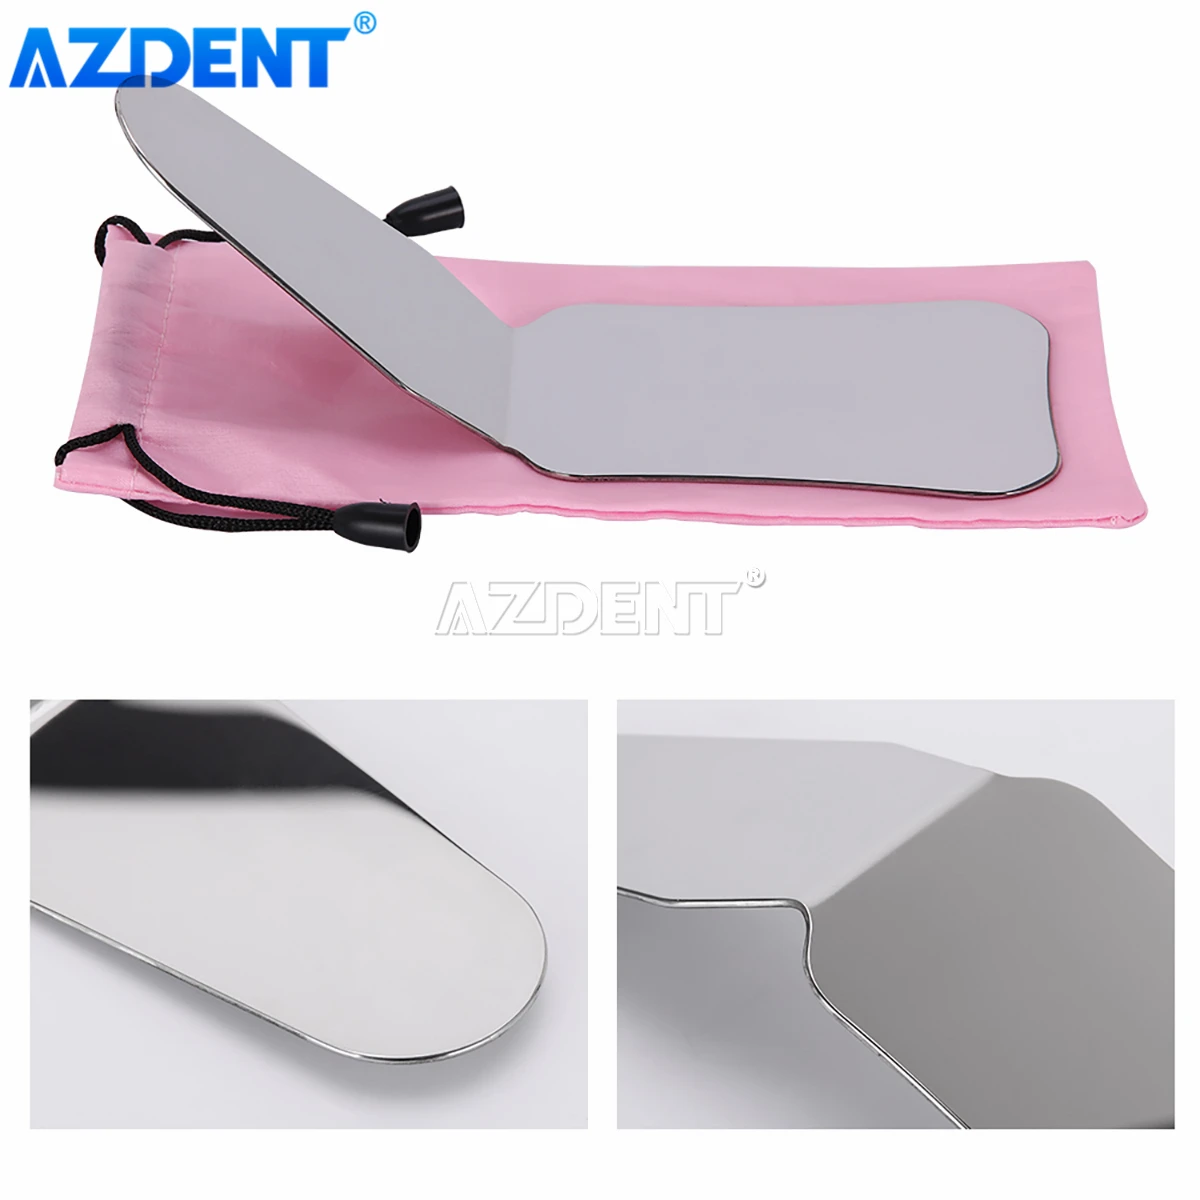 AZDENT-Espejos de fotografía Dental, 1 unidad, Reflector de doble cara de acero inoxidable para ortodoncia 2 #